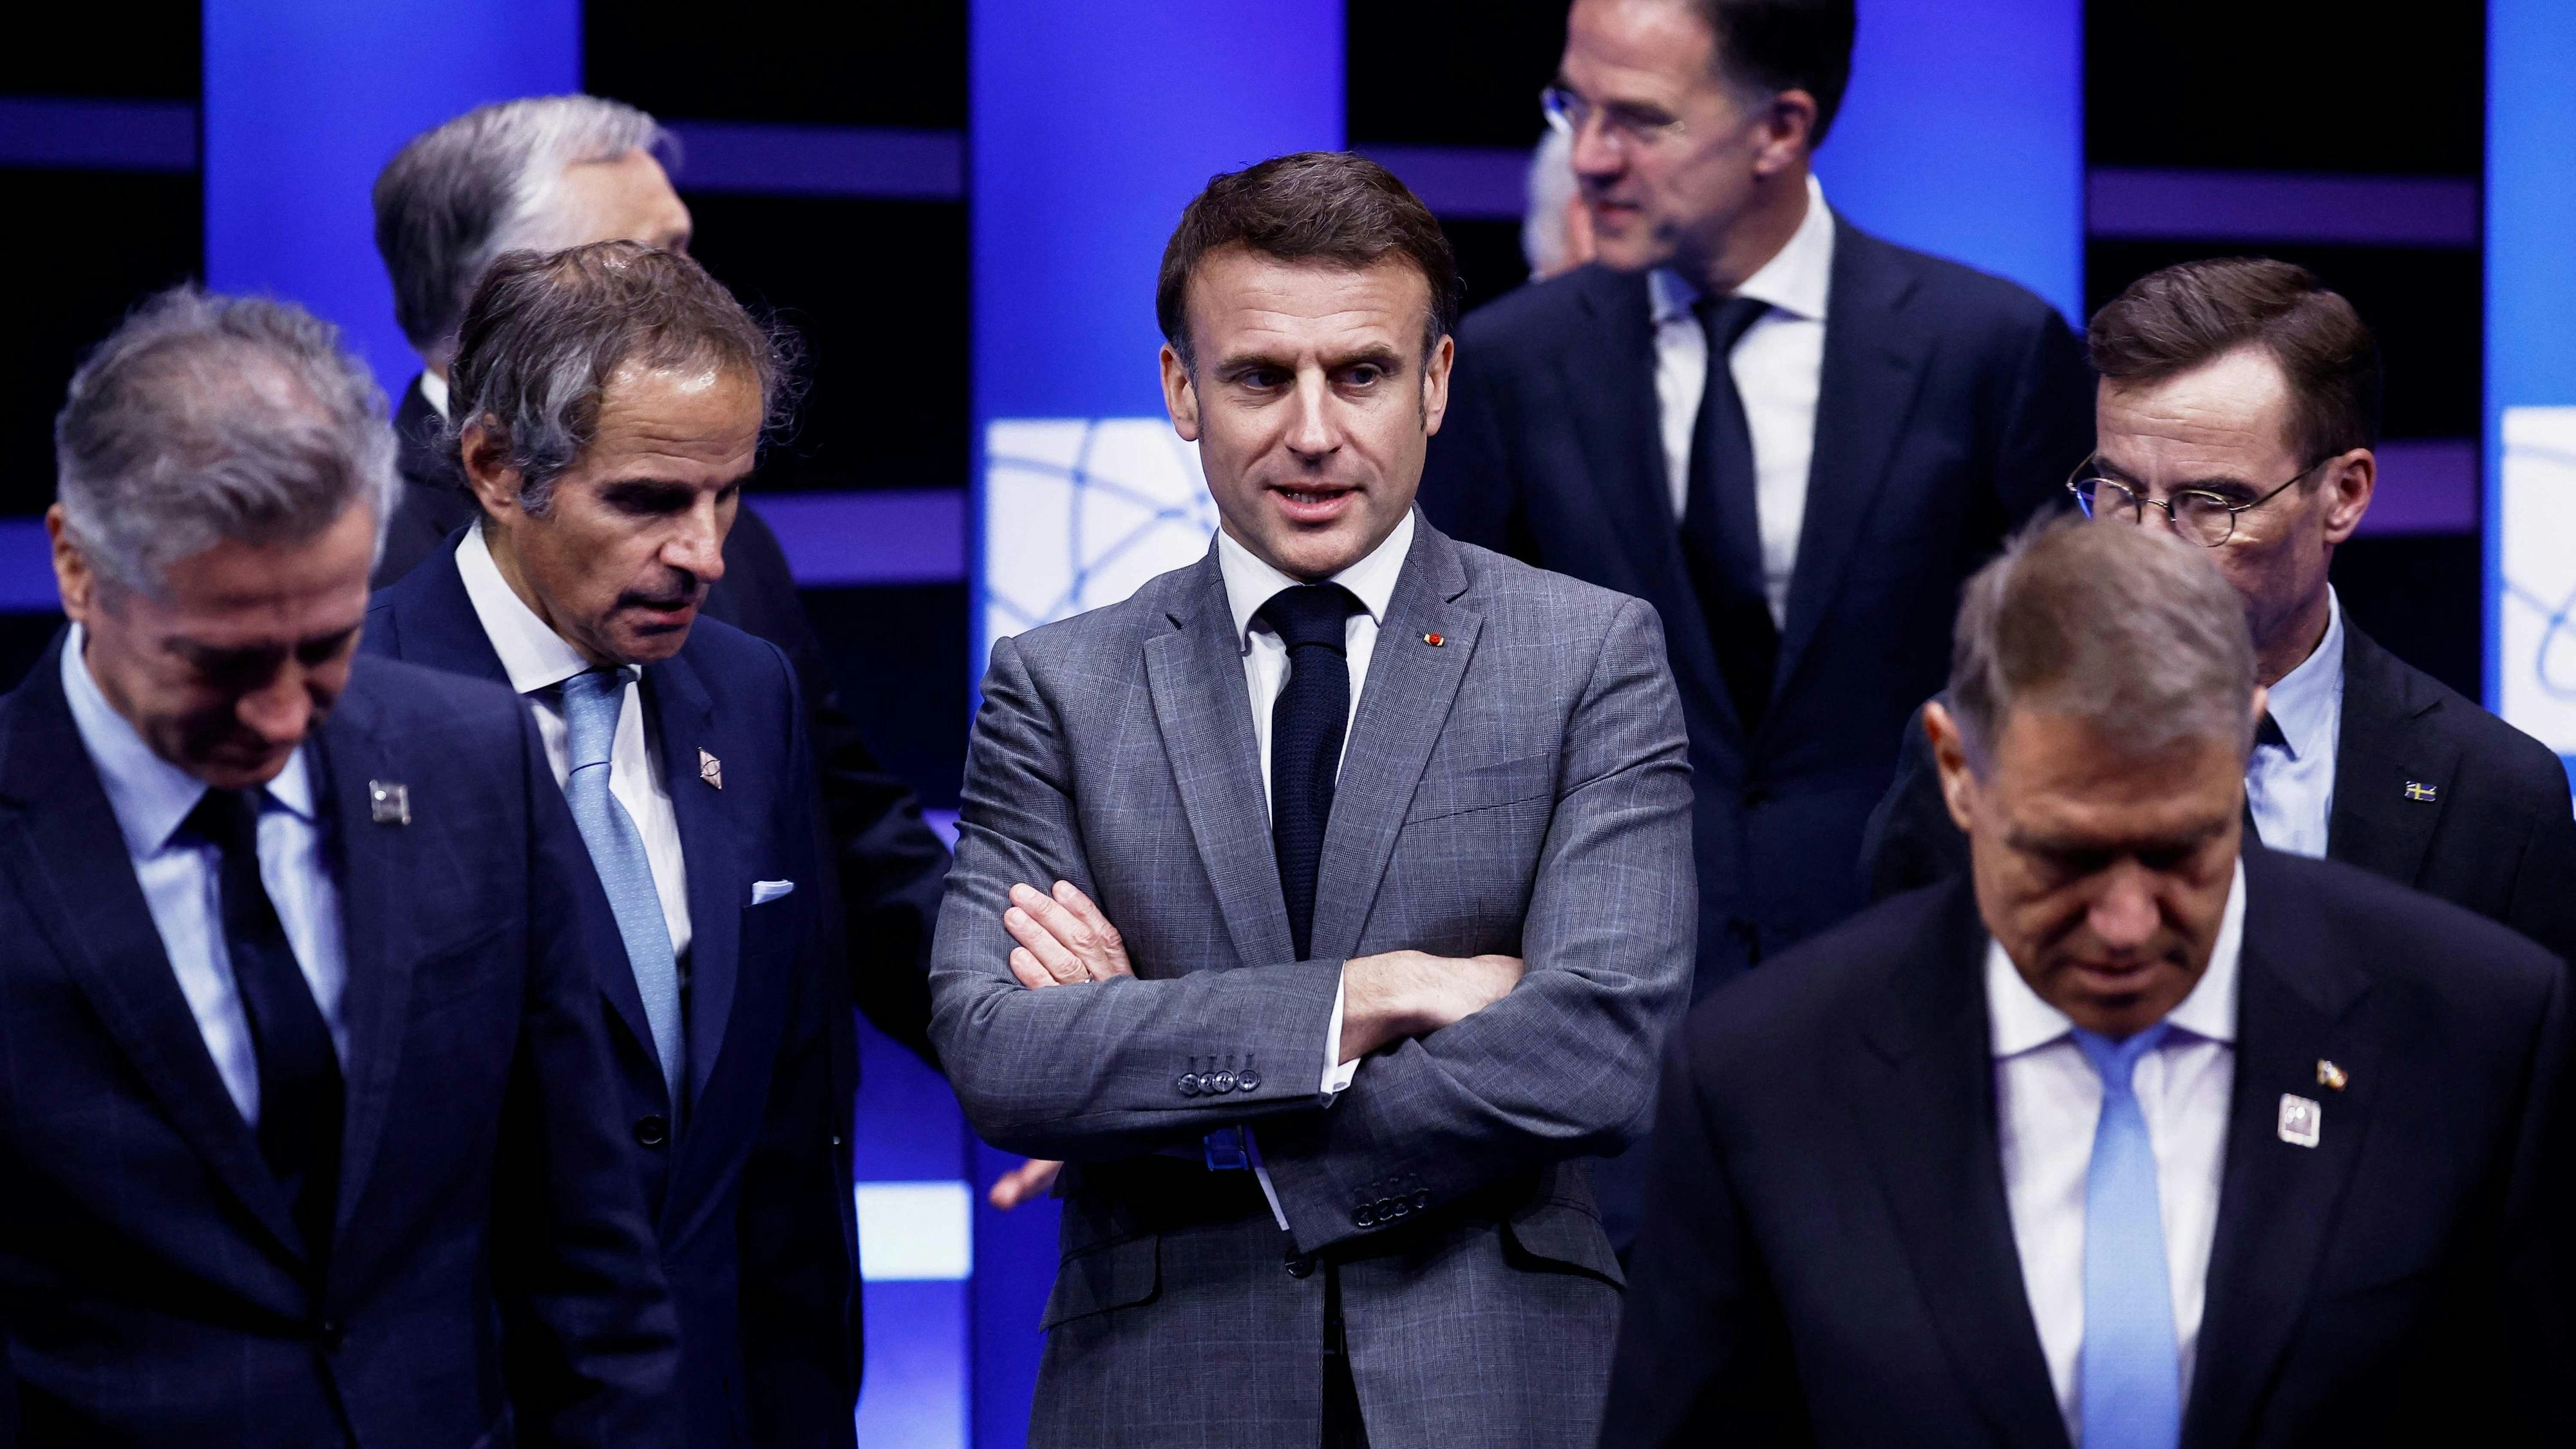 Frankreichs Präsident Emmanuel Macron gilt als einer der vehementesten Befürworter des Ausbaua der Kernenergie in Europa